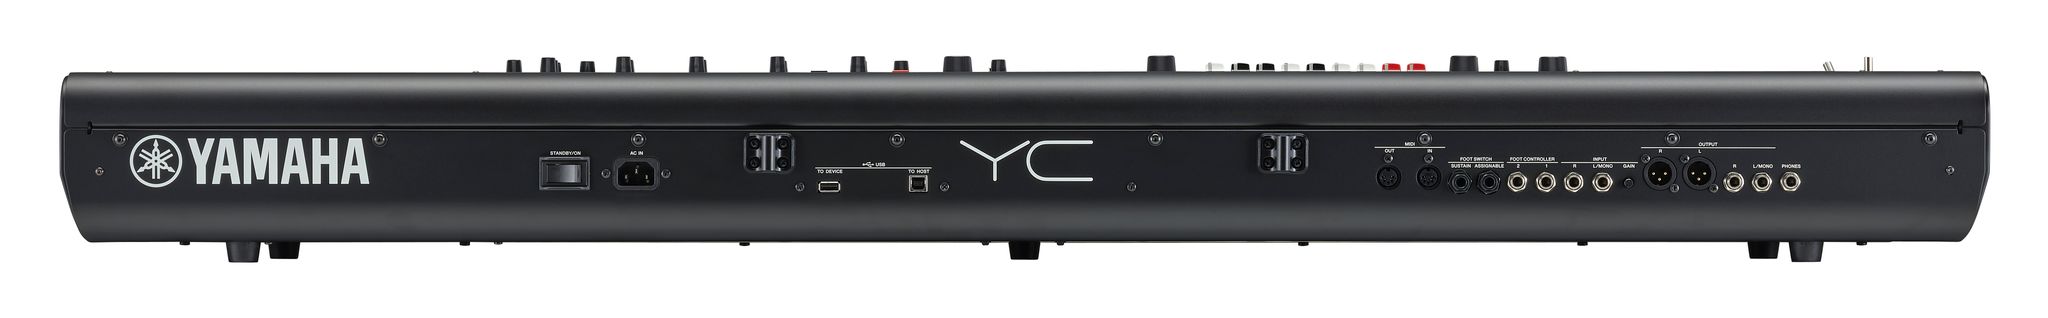 Yamaha Yc 88 - Teclado de escenario - Variation 2